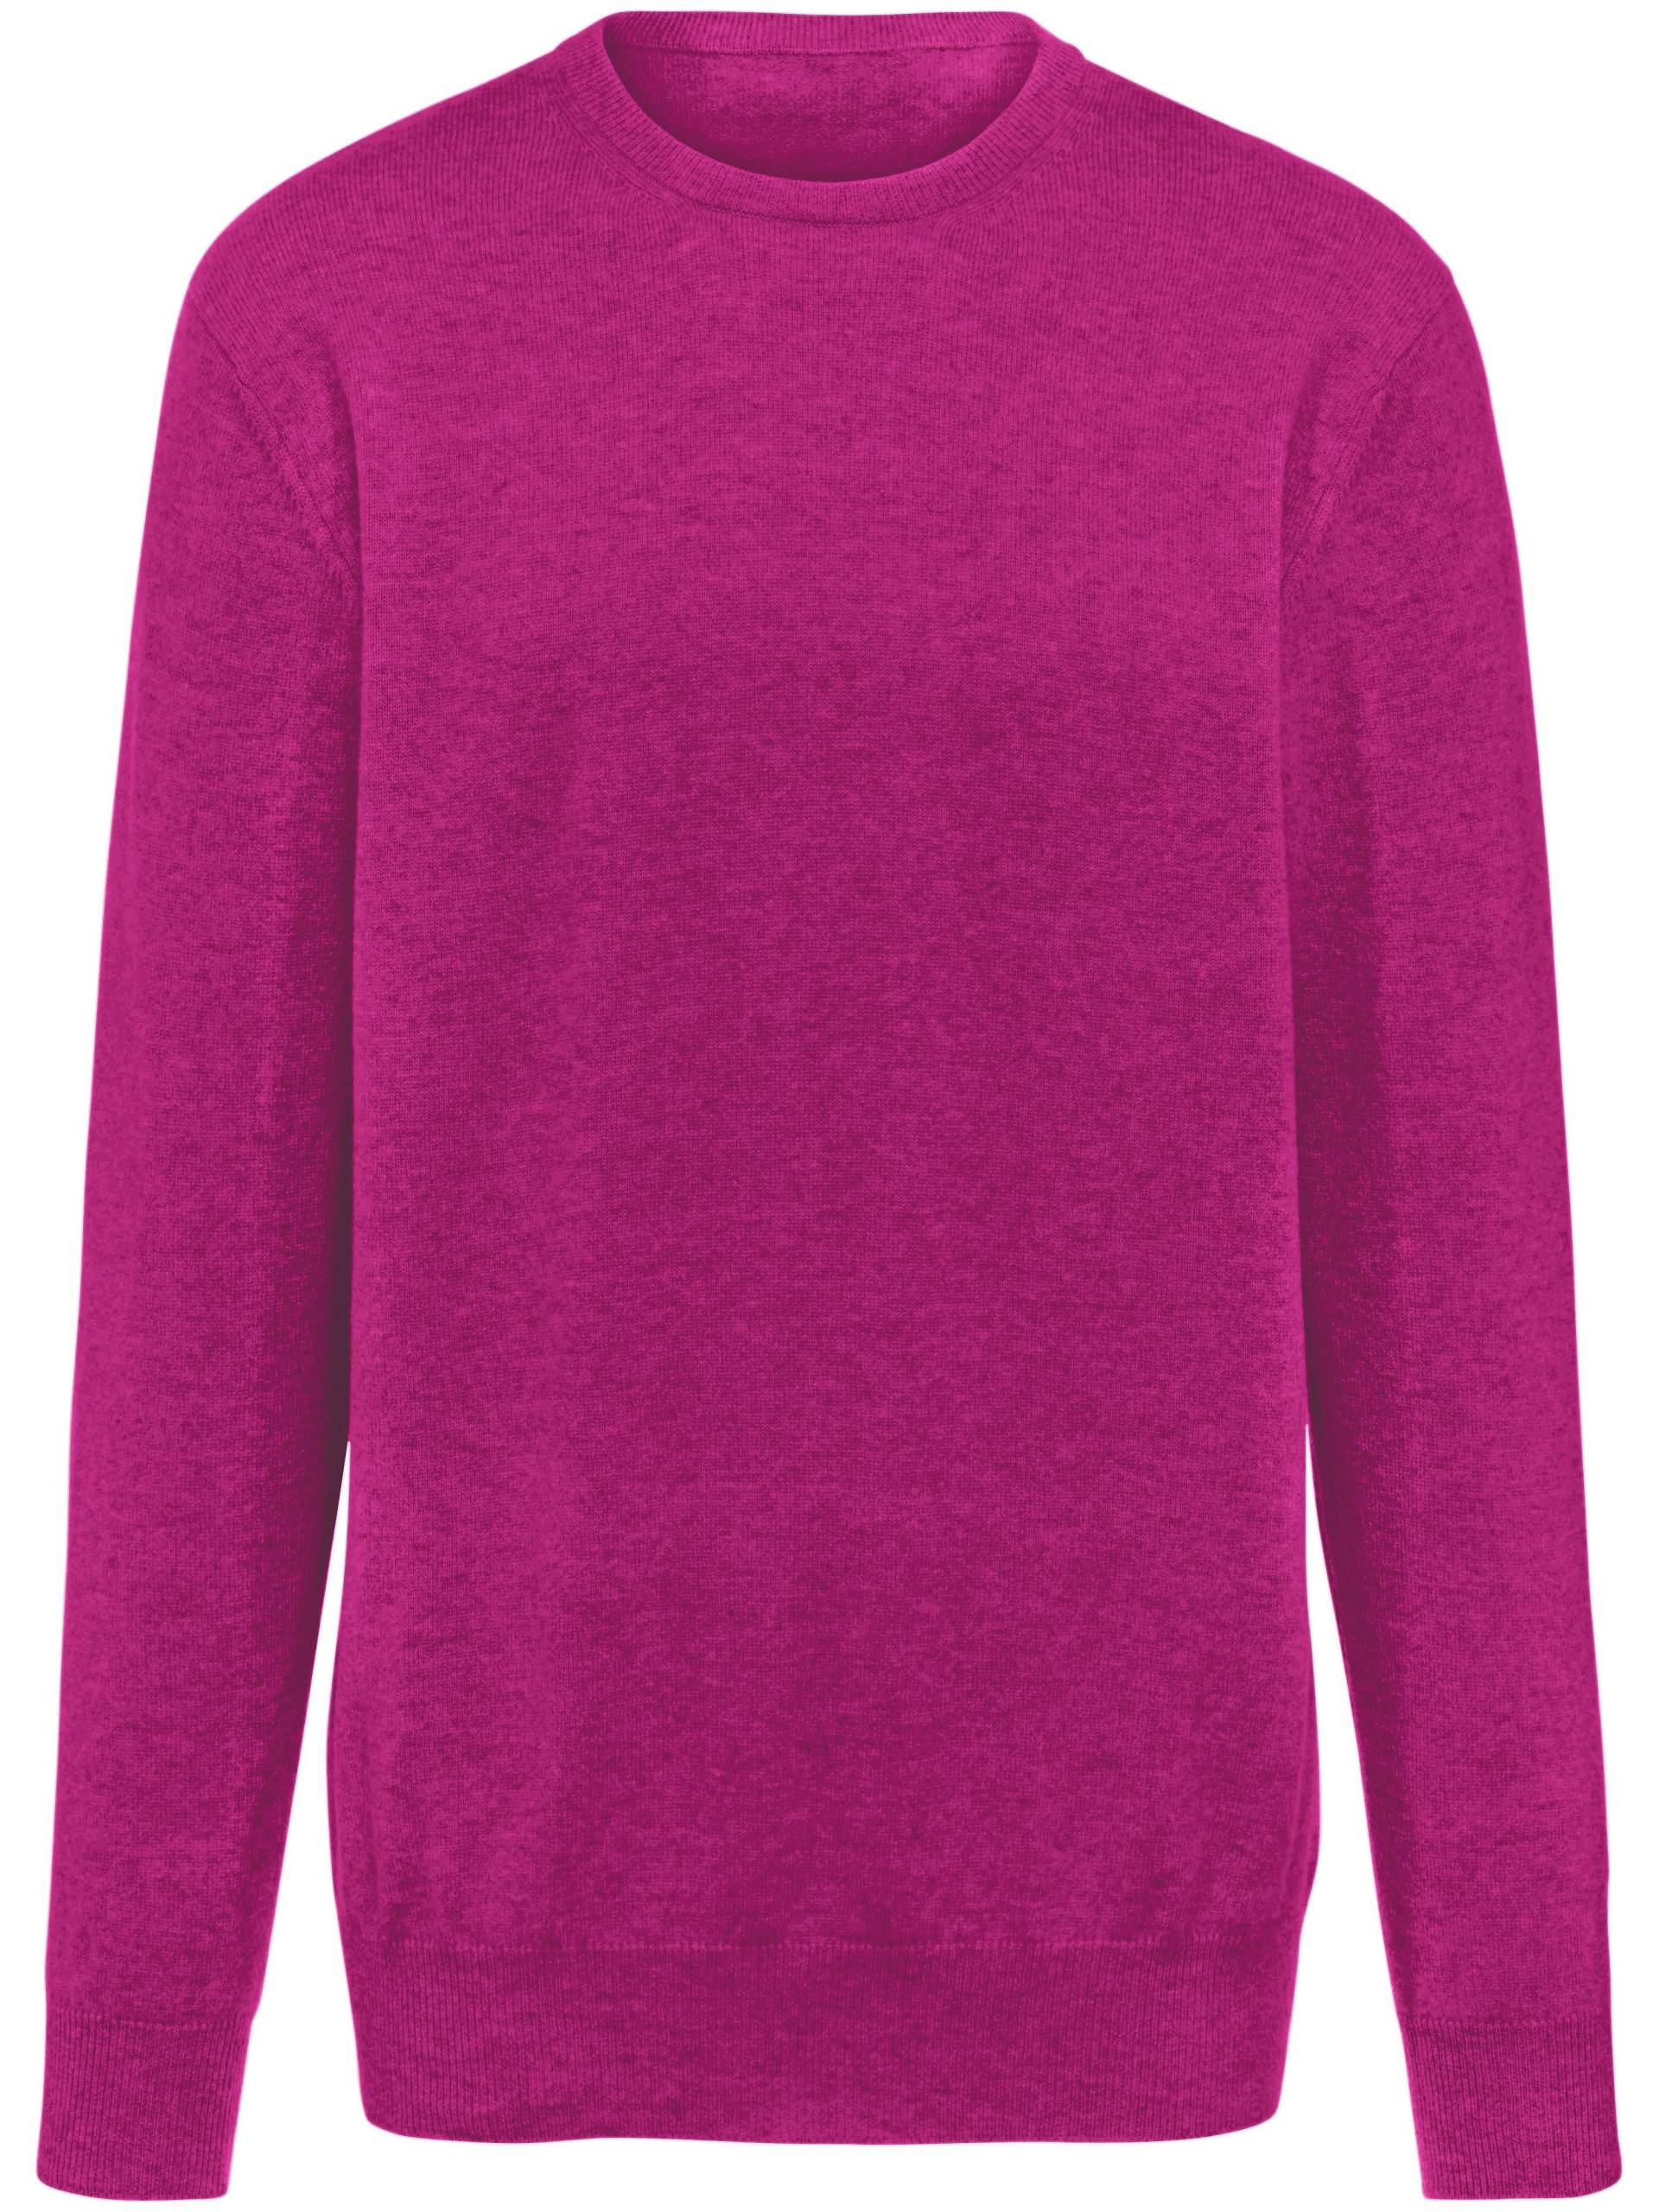 Pullover aus 100% Premium-Kaschmir Modell Ralph Peter Hahn Cashmere pink Größe: 58 von Peter Hahn Cashmere